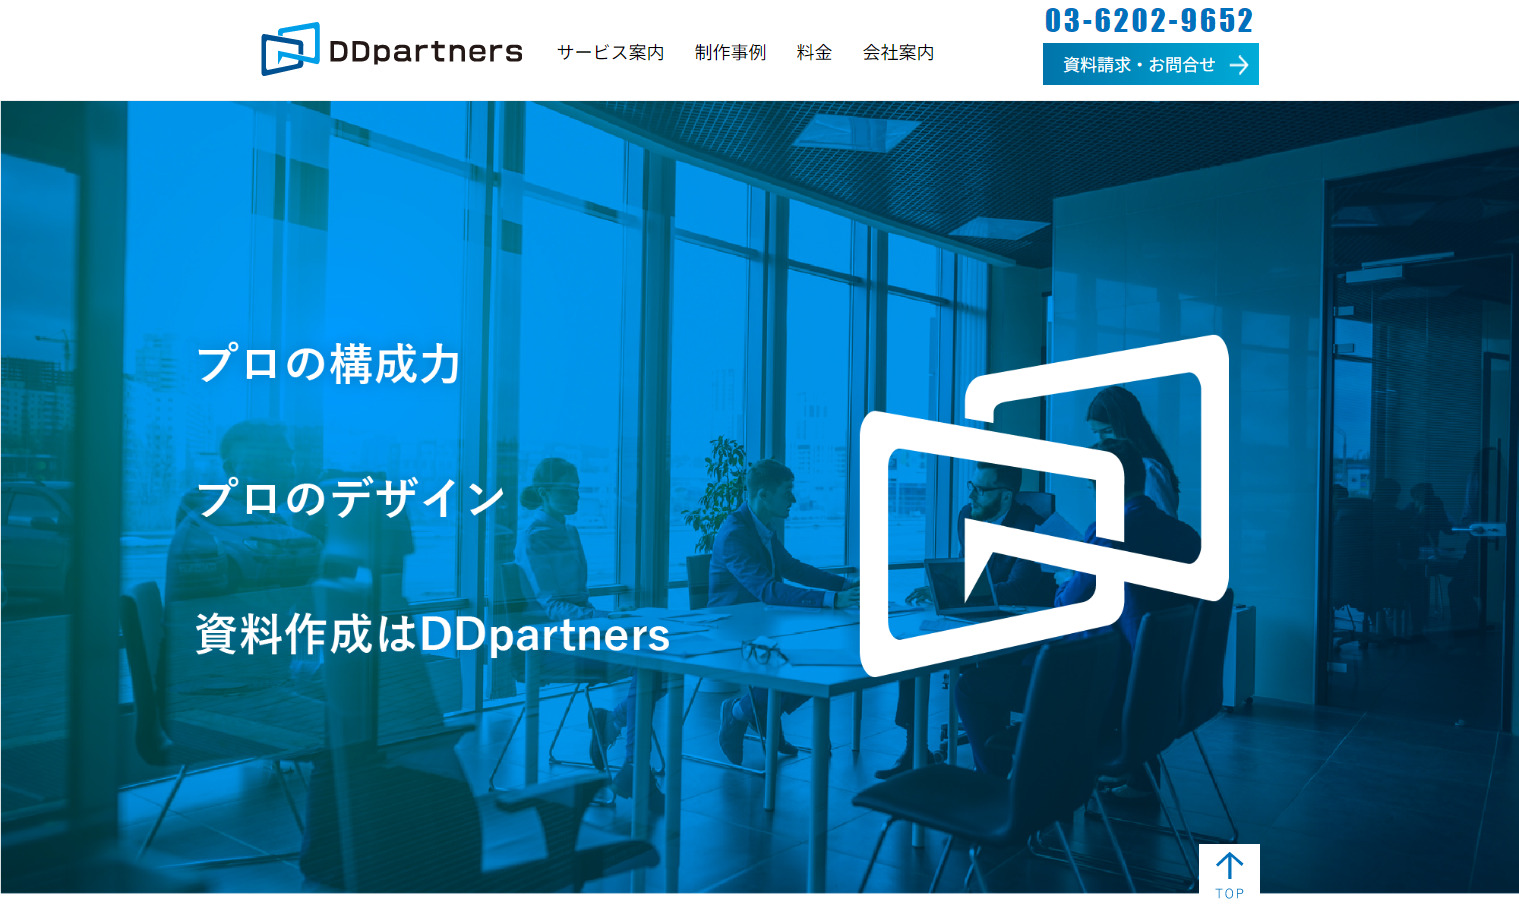 DDpartnersのトップページ画像